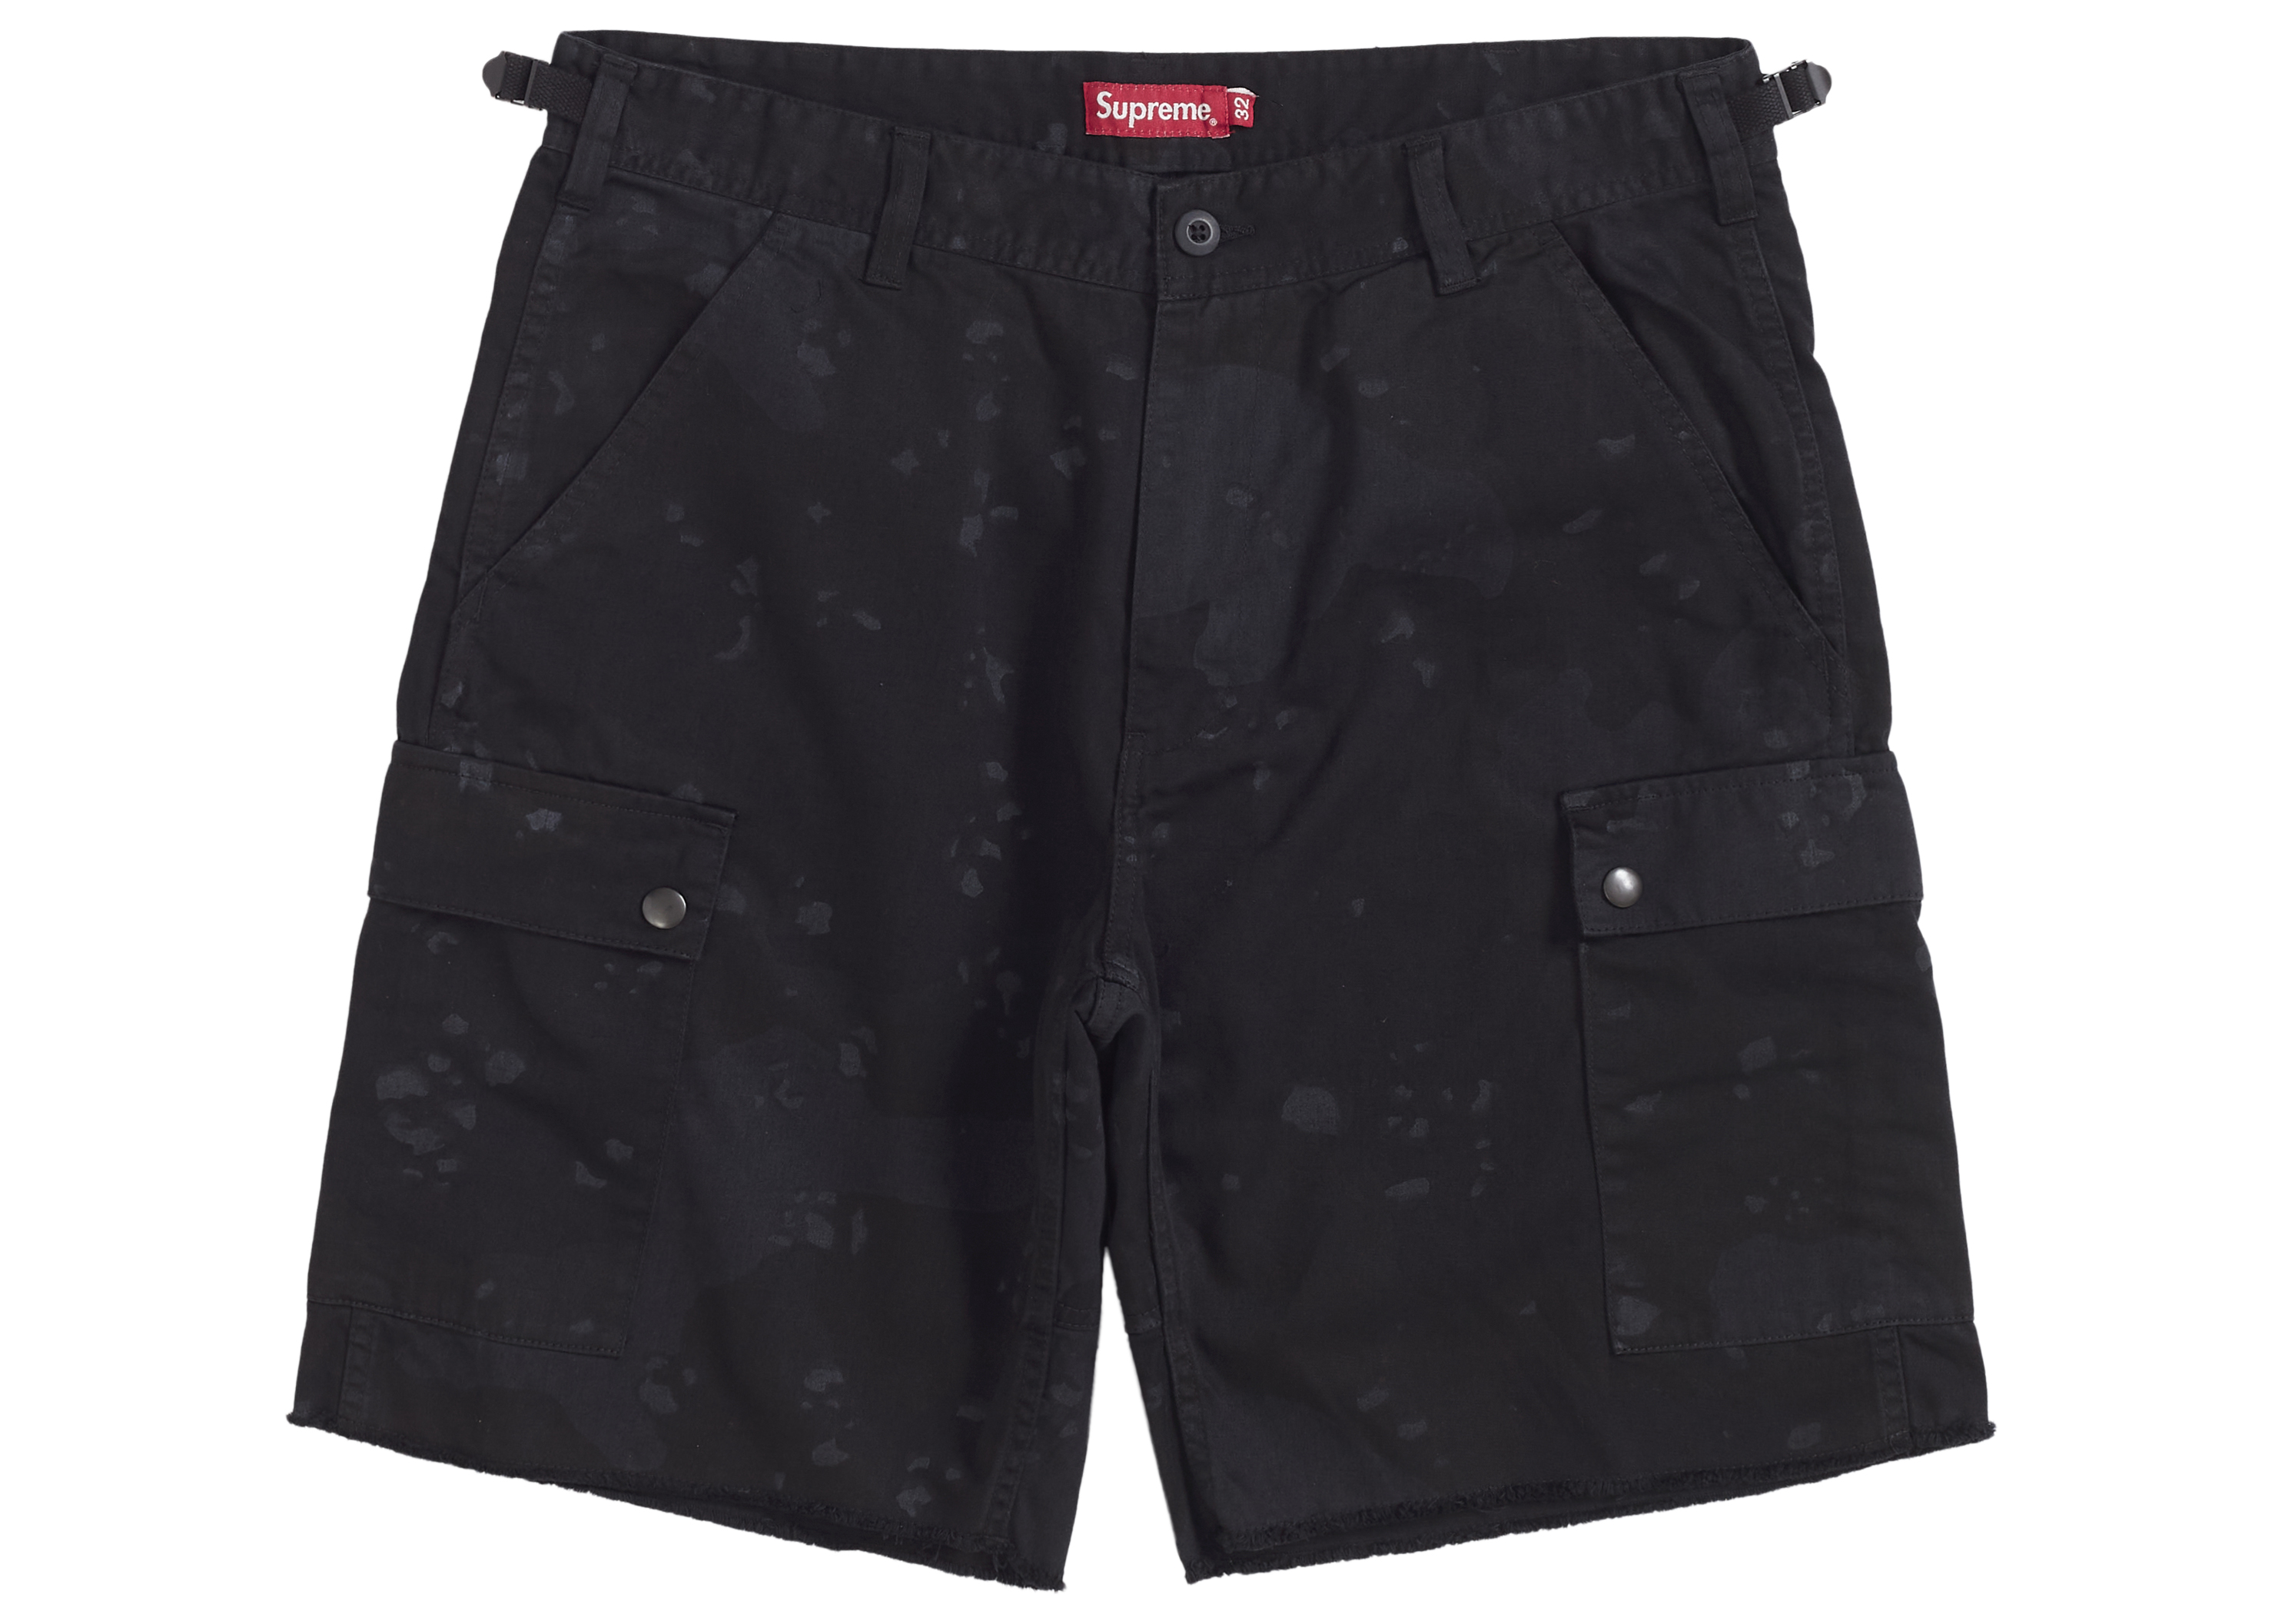 supreme over dyed camo cargo shorts | gdgoenkalapetite.com